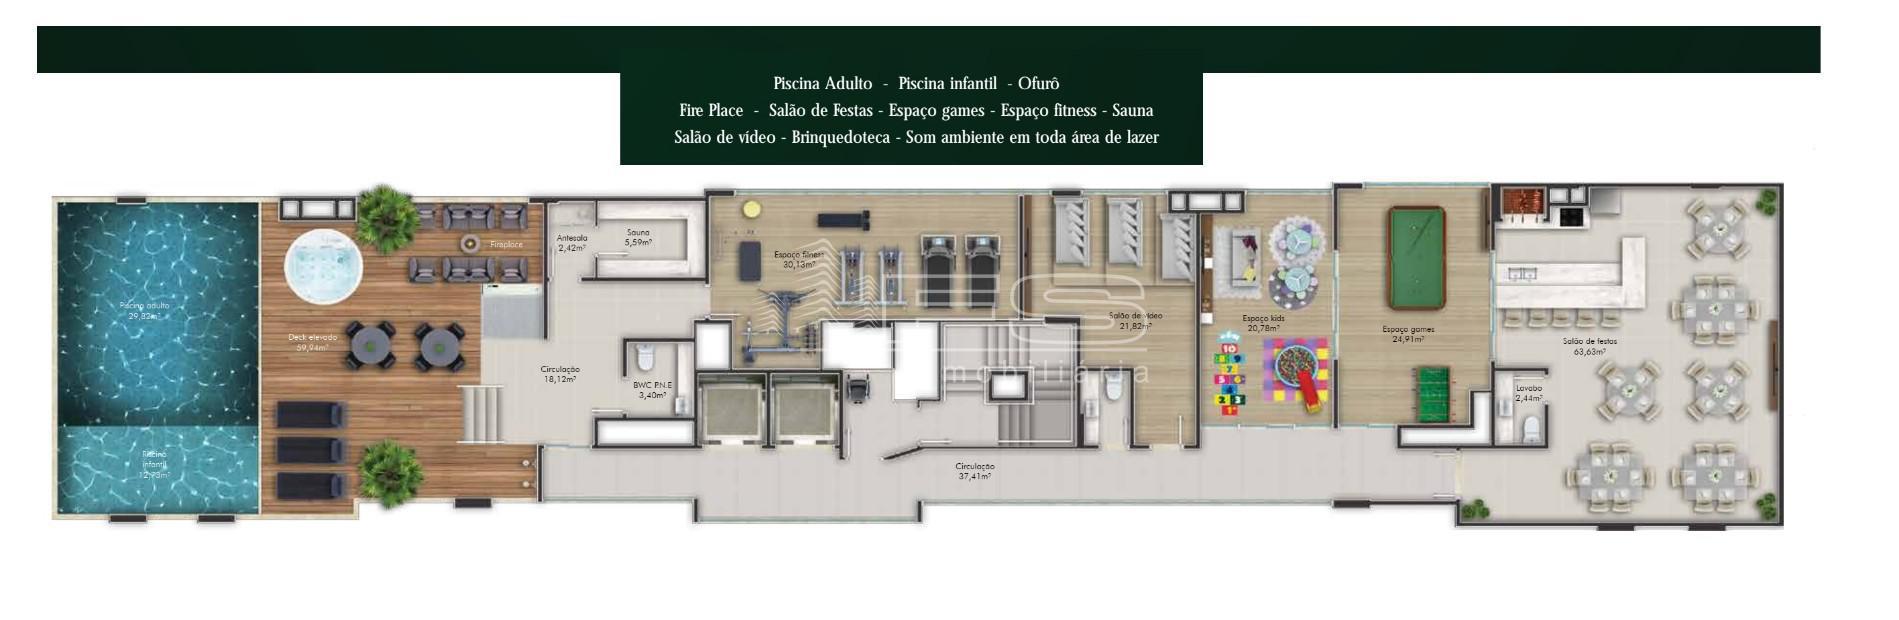 Apartamento com 2 Dormitórios à venda, 60 m² por R$ 614.232,00